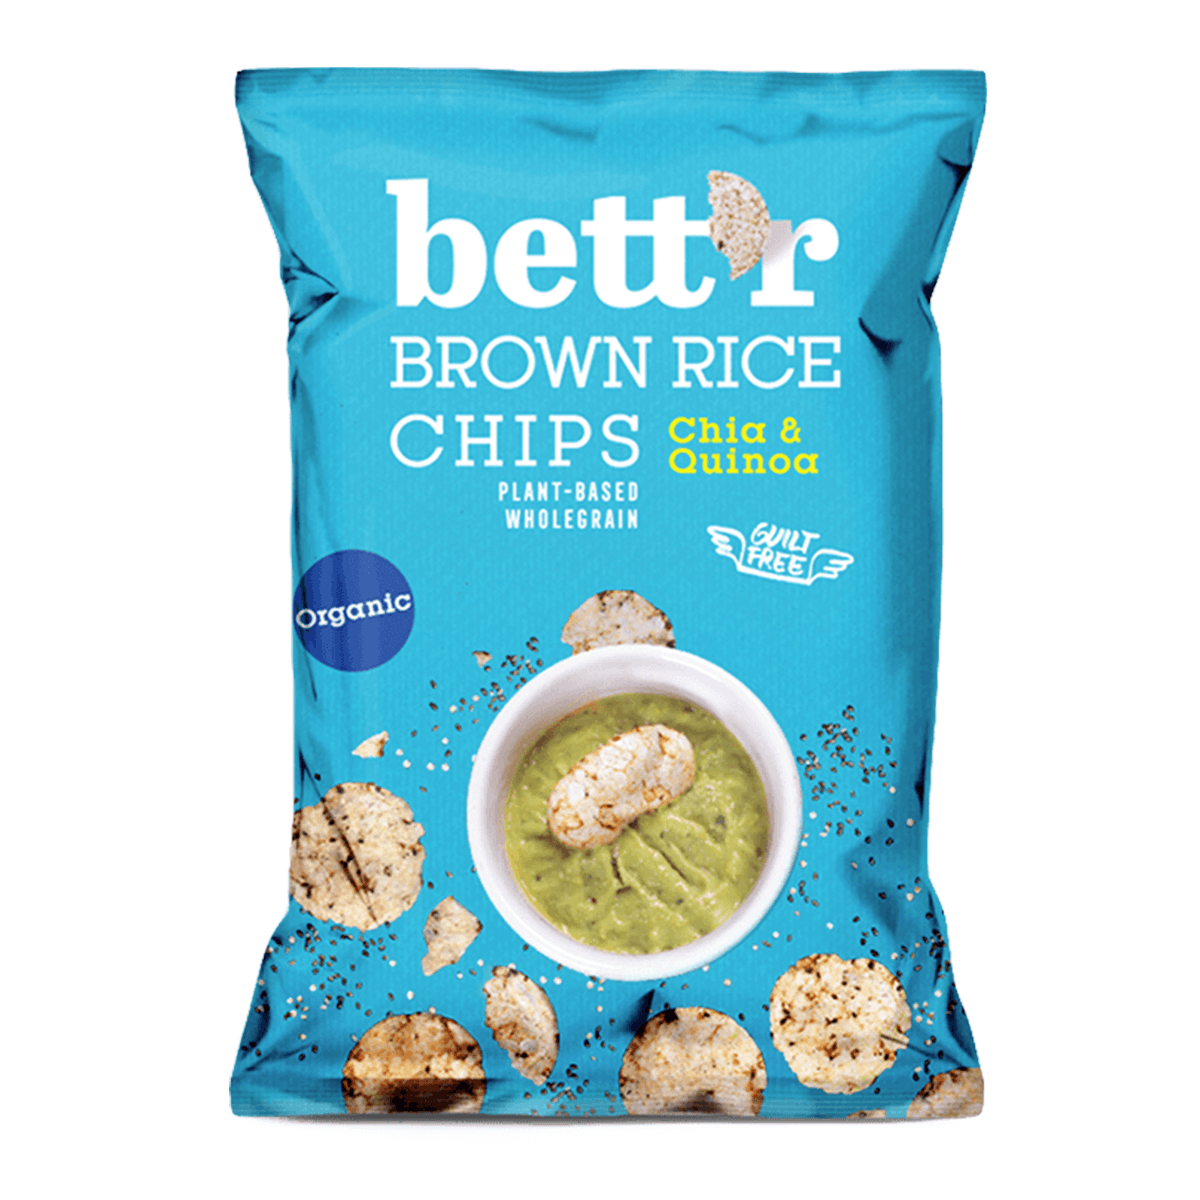 Braune Reis-Chips Chia & Quinoa, Bett’r, 60g